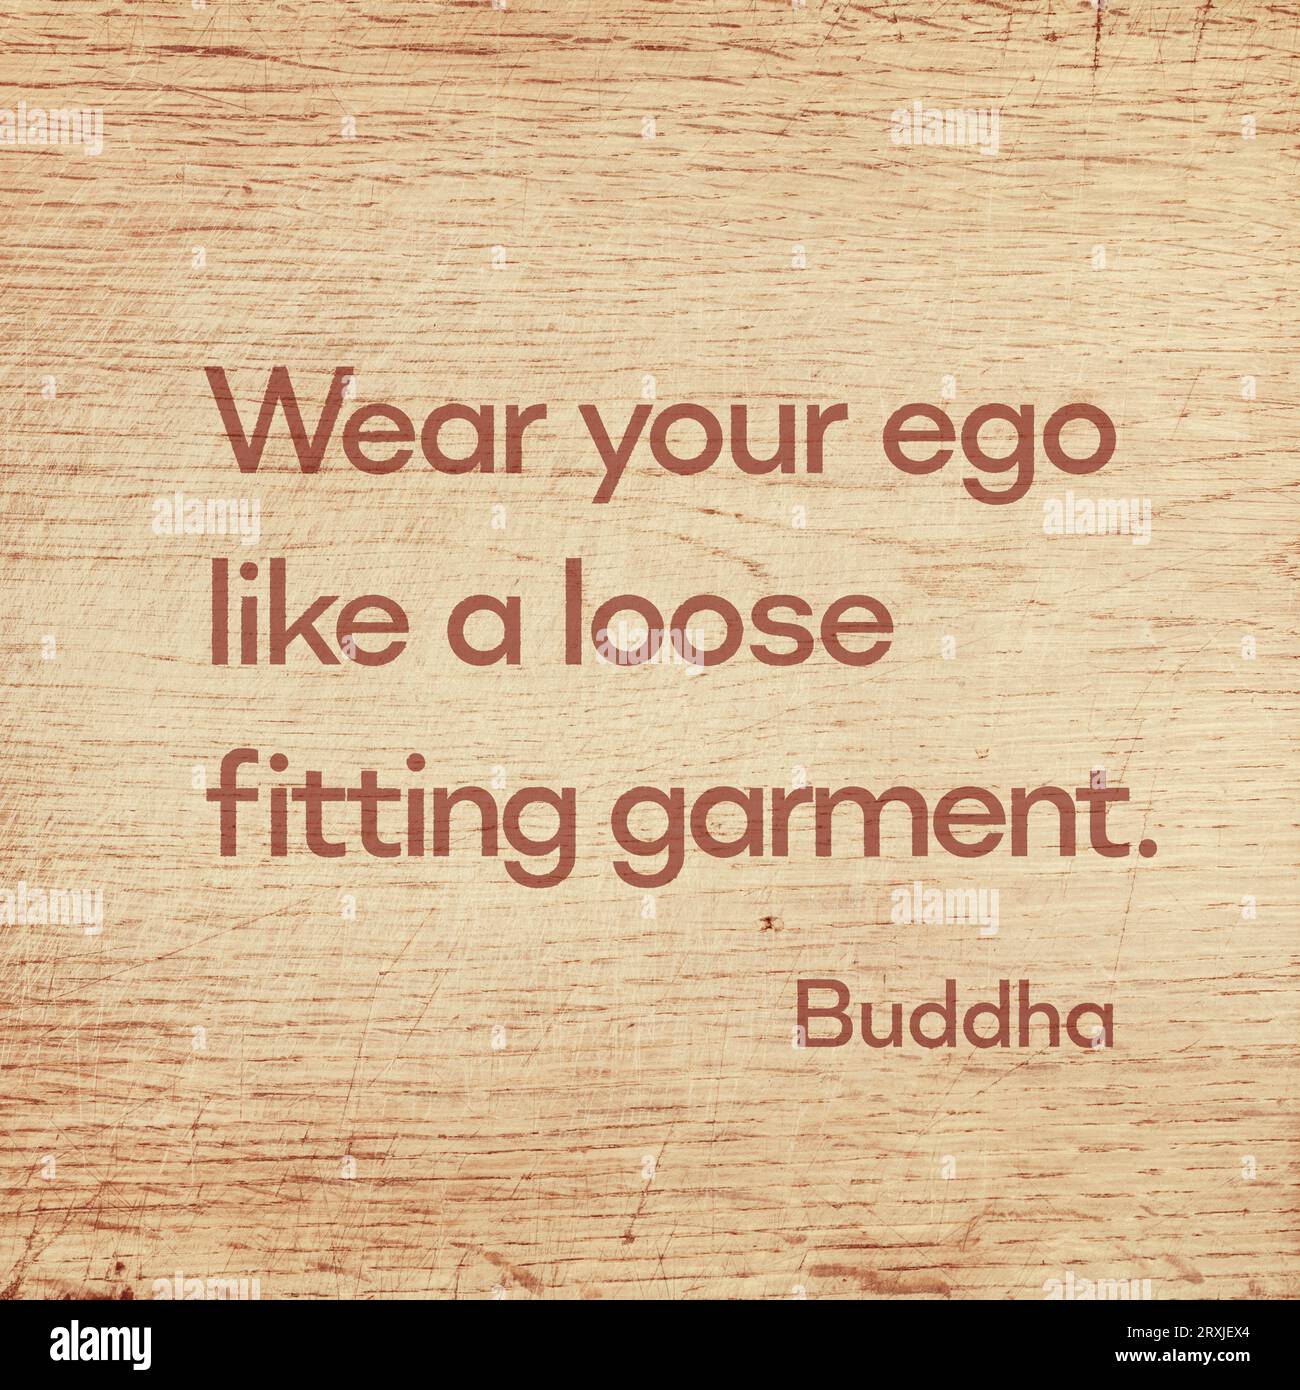 Portez votre ego comme un vêtement ample - célèbre citation de Gautama Buddha imprimée sur une planche en bois grunge Banque D'Images